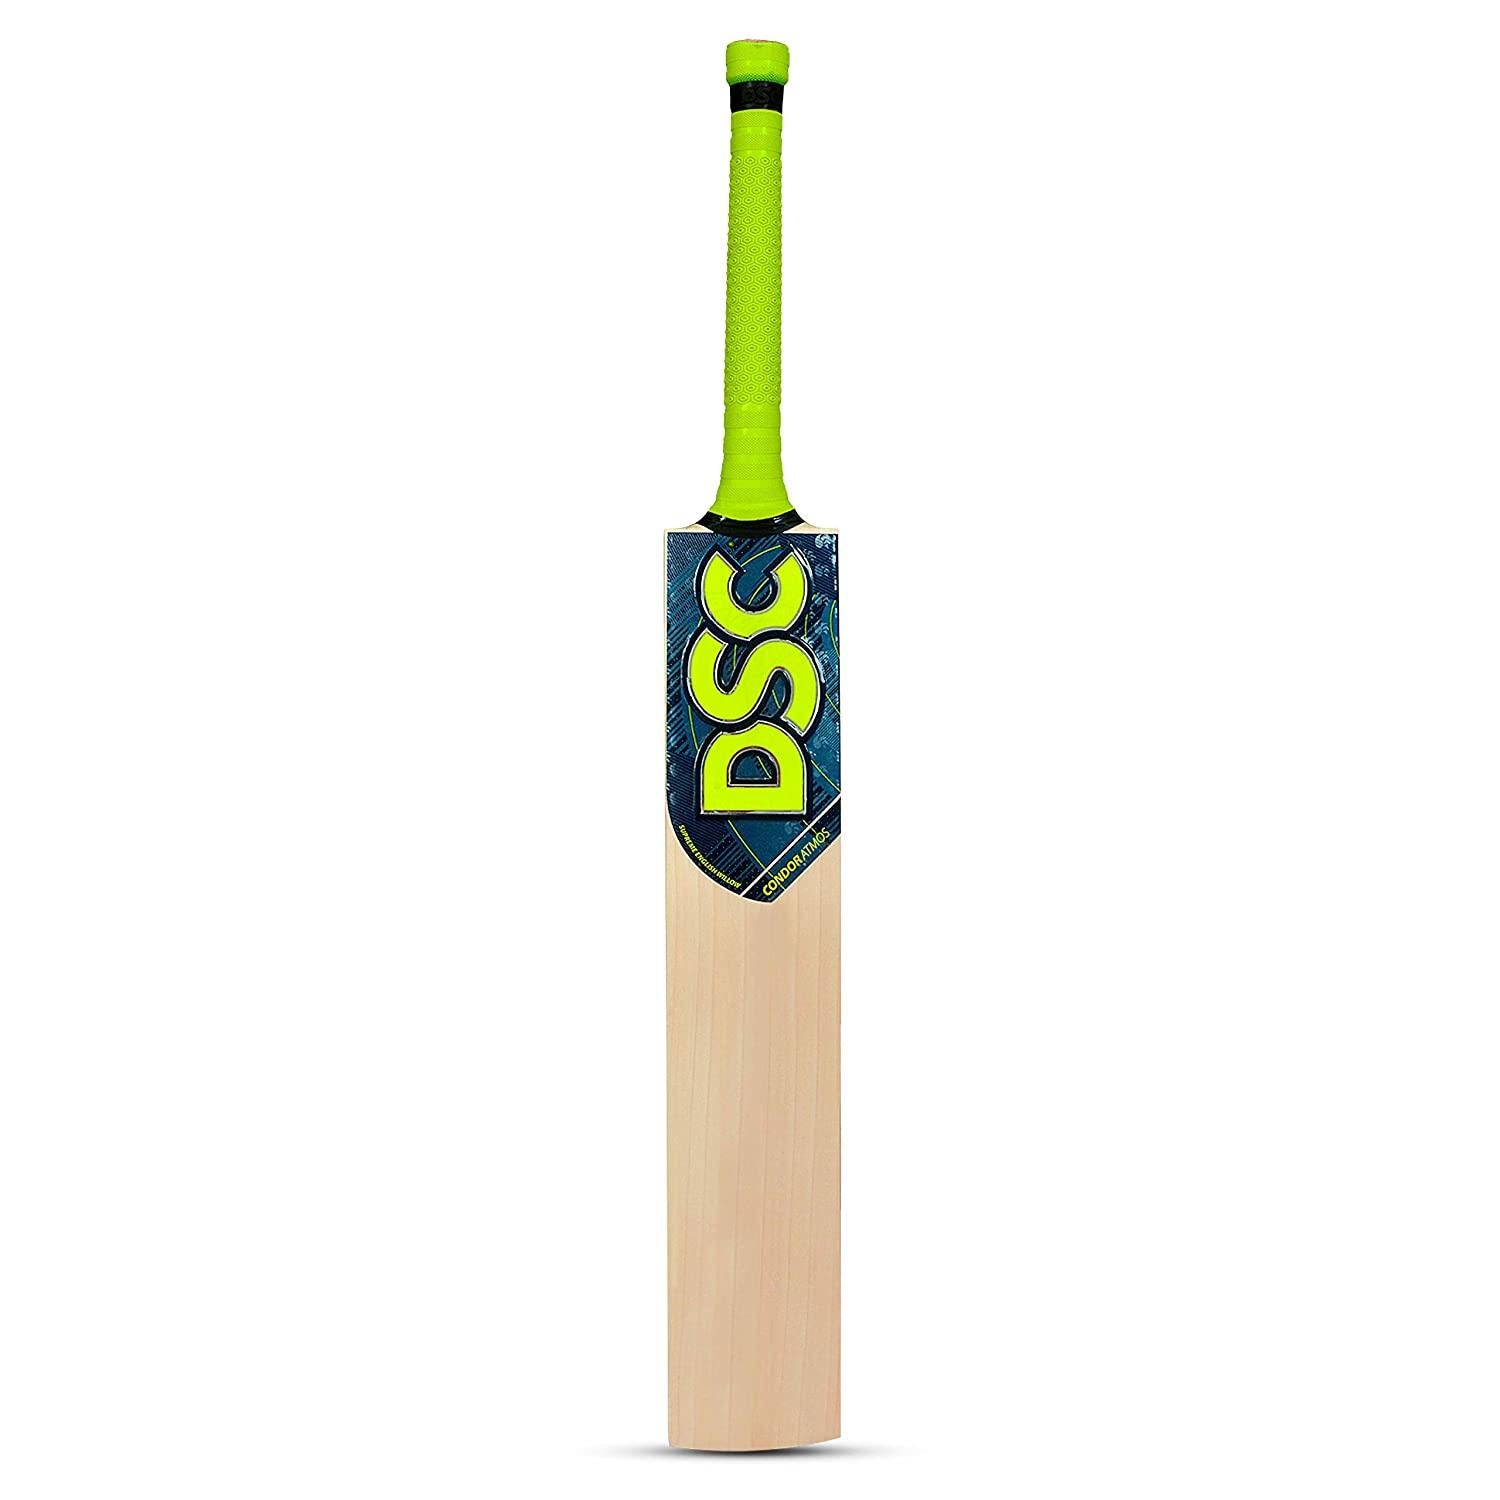 Cricket Best Buy - Shop Cricket Equipment Online